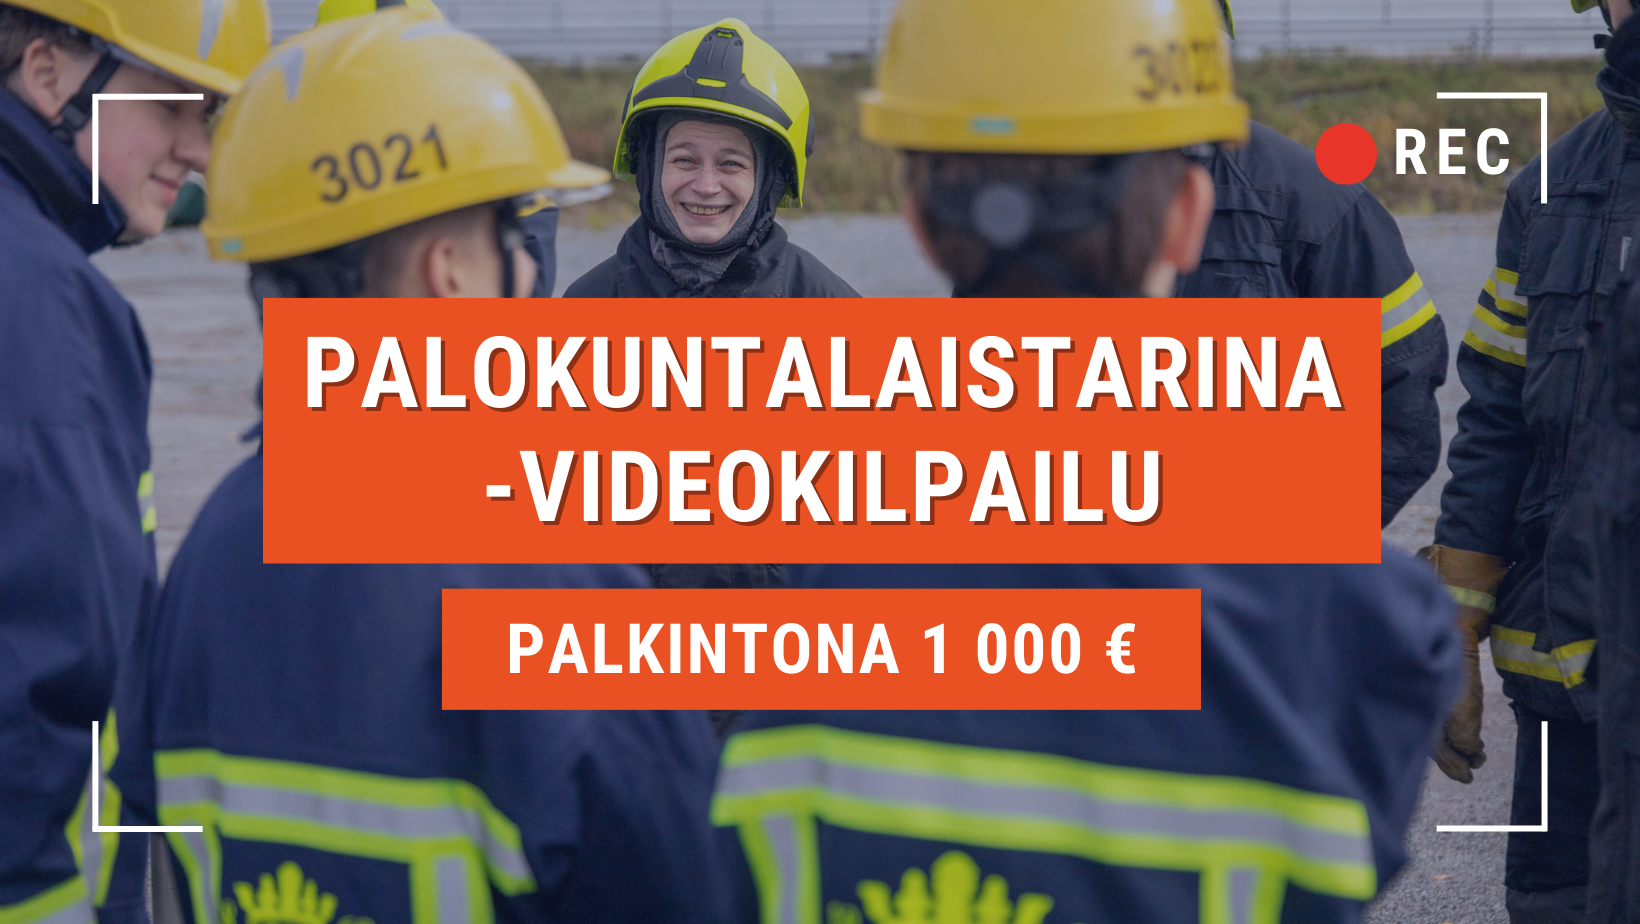 Palokuntalaistarina-videokilpailu, palkintoa 1 000 euroa.